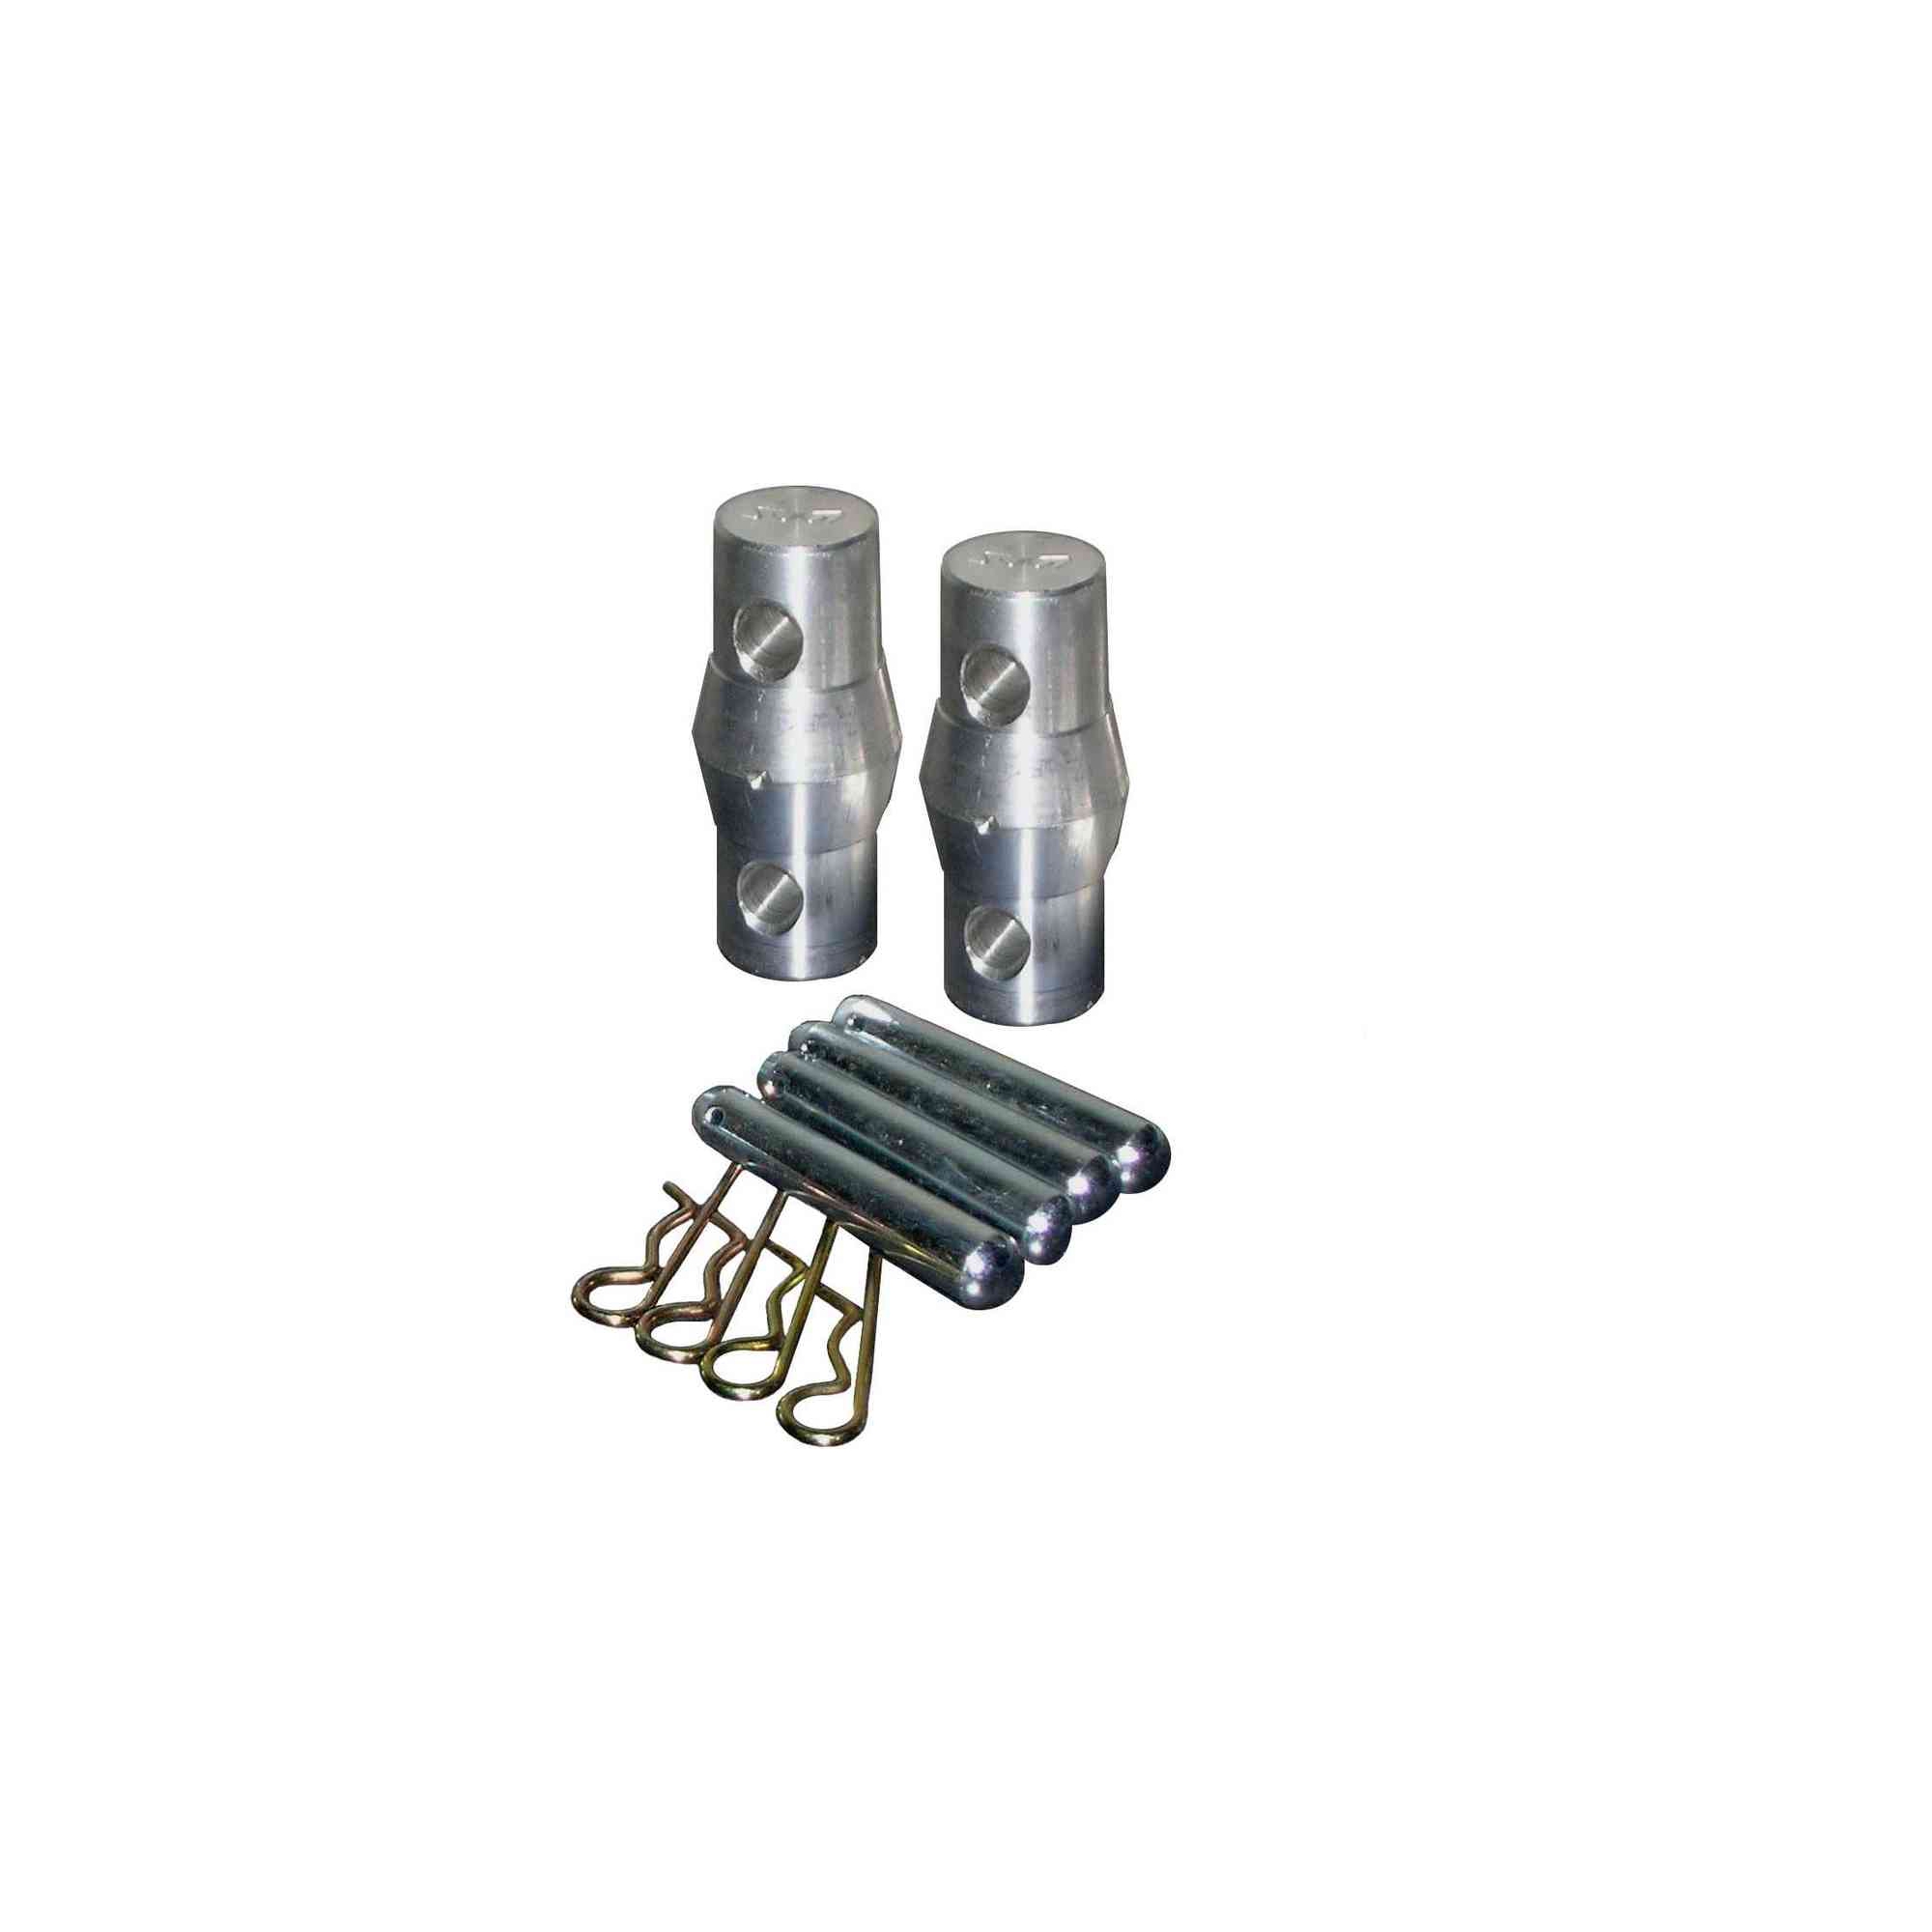 Kit giunzione standard per tralicci composto da 2 perni conici + 4 spine+ 4 copiglie